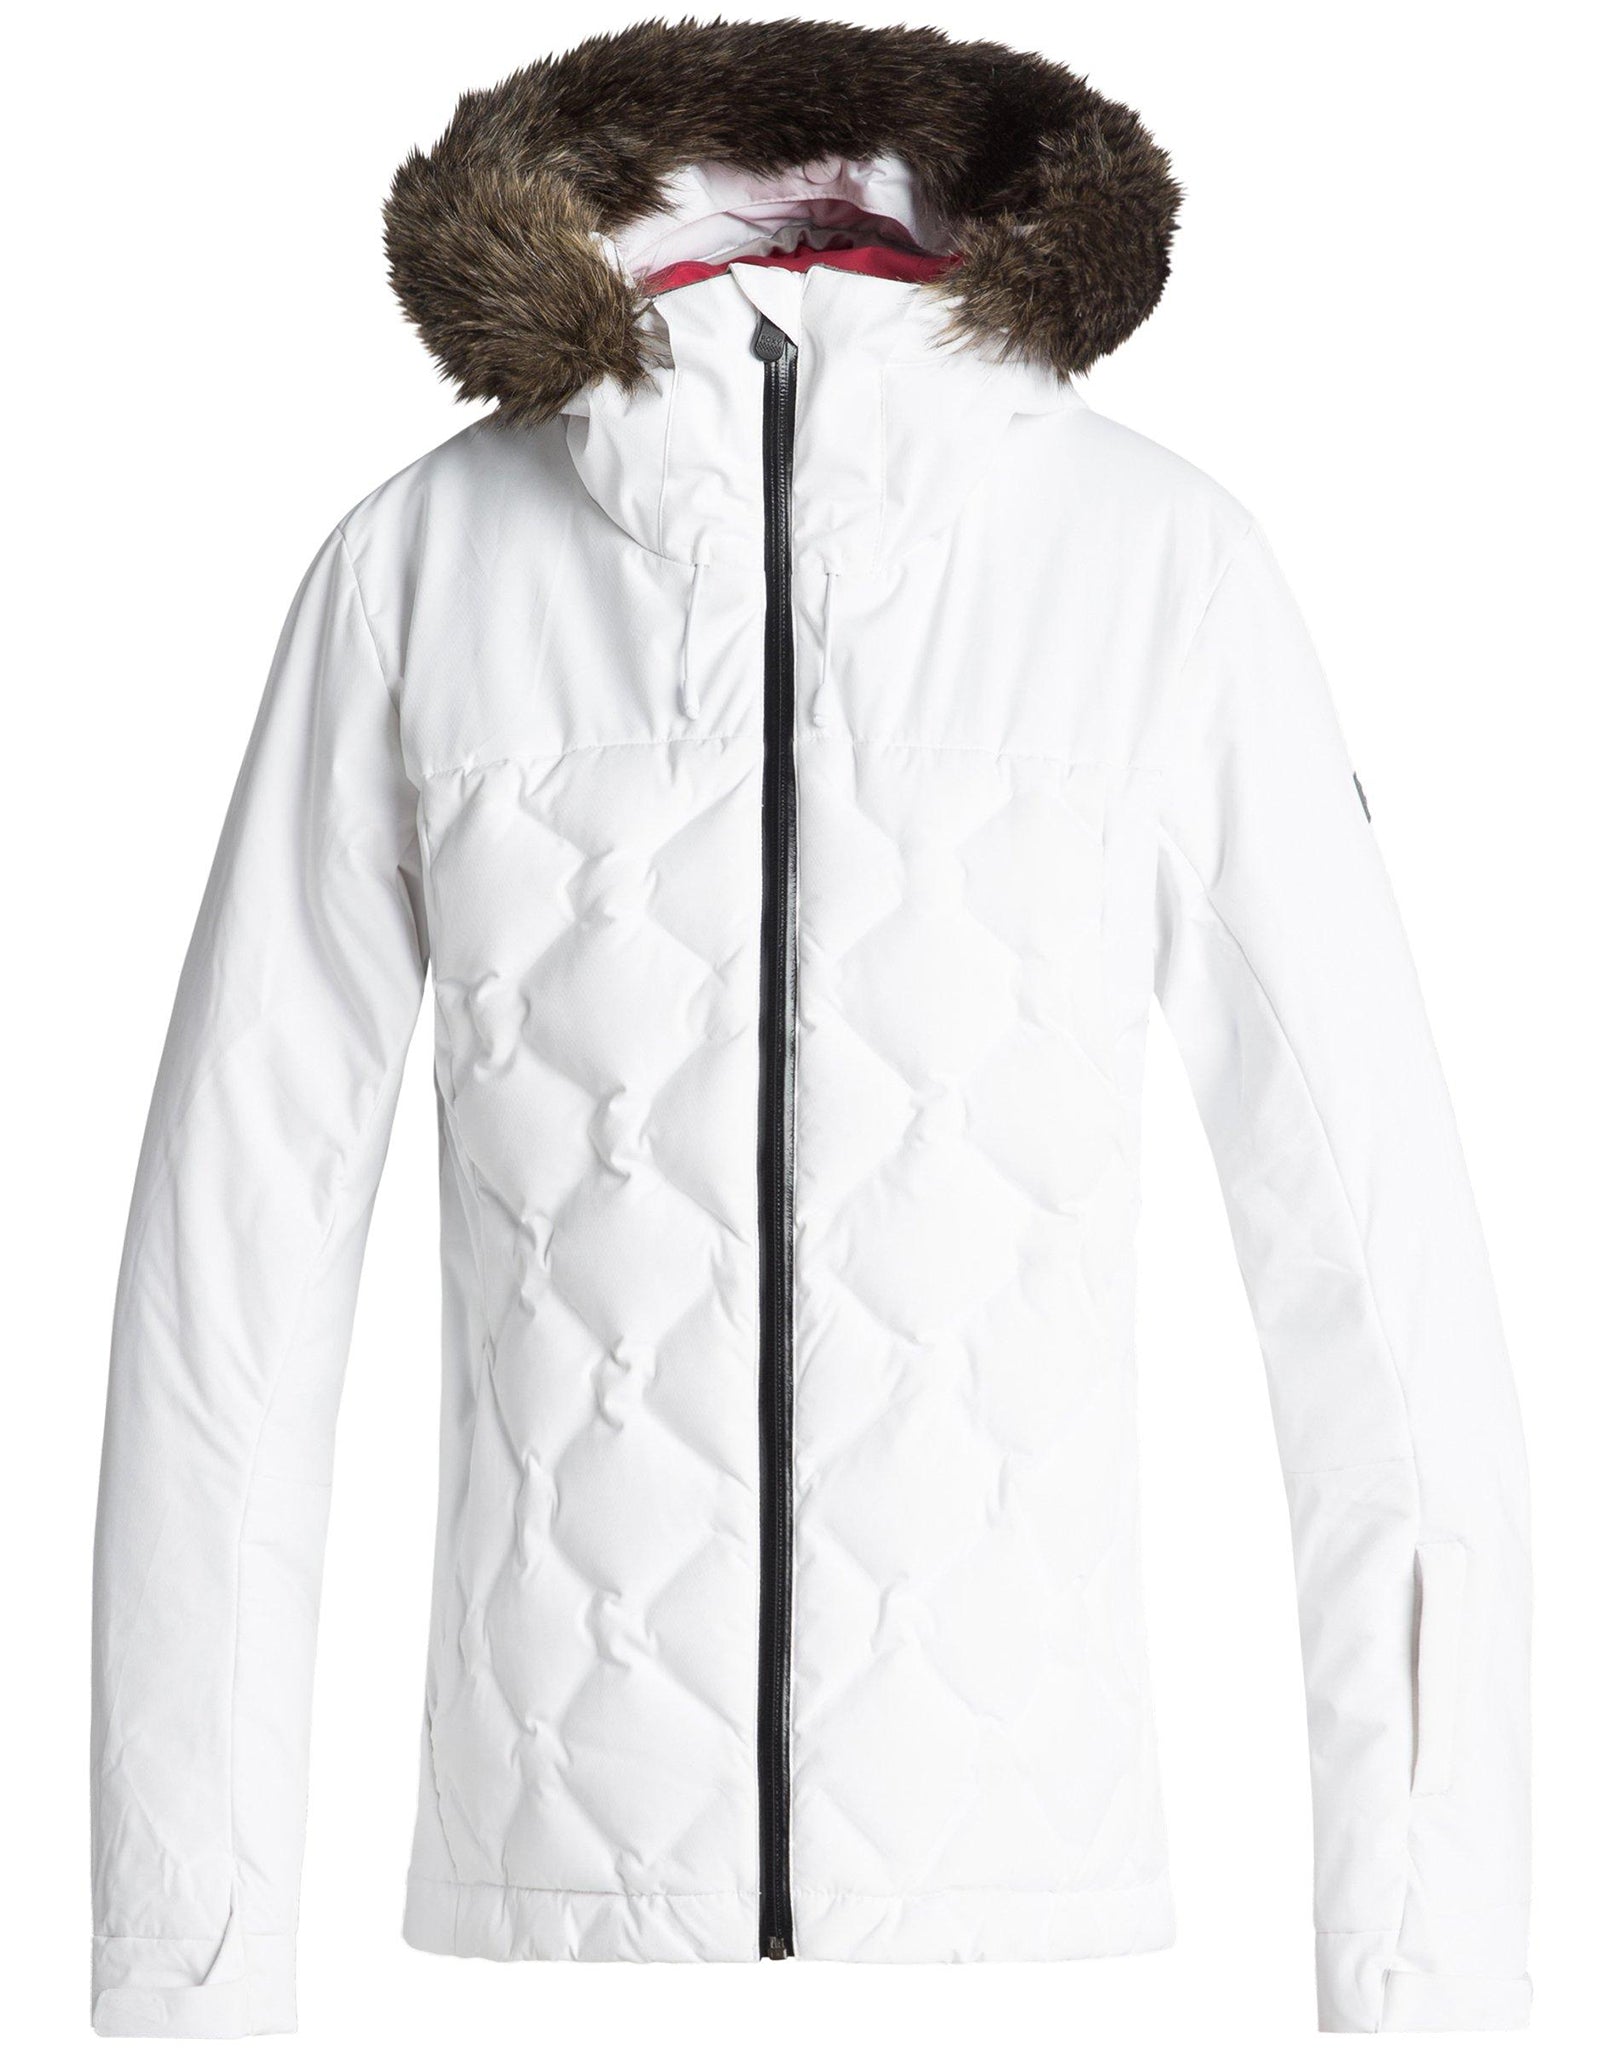 roxy white ski jacket